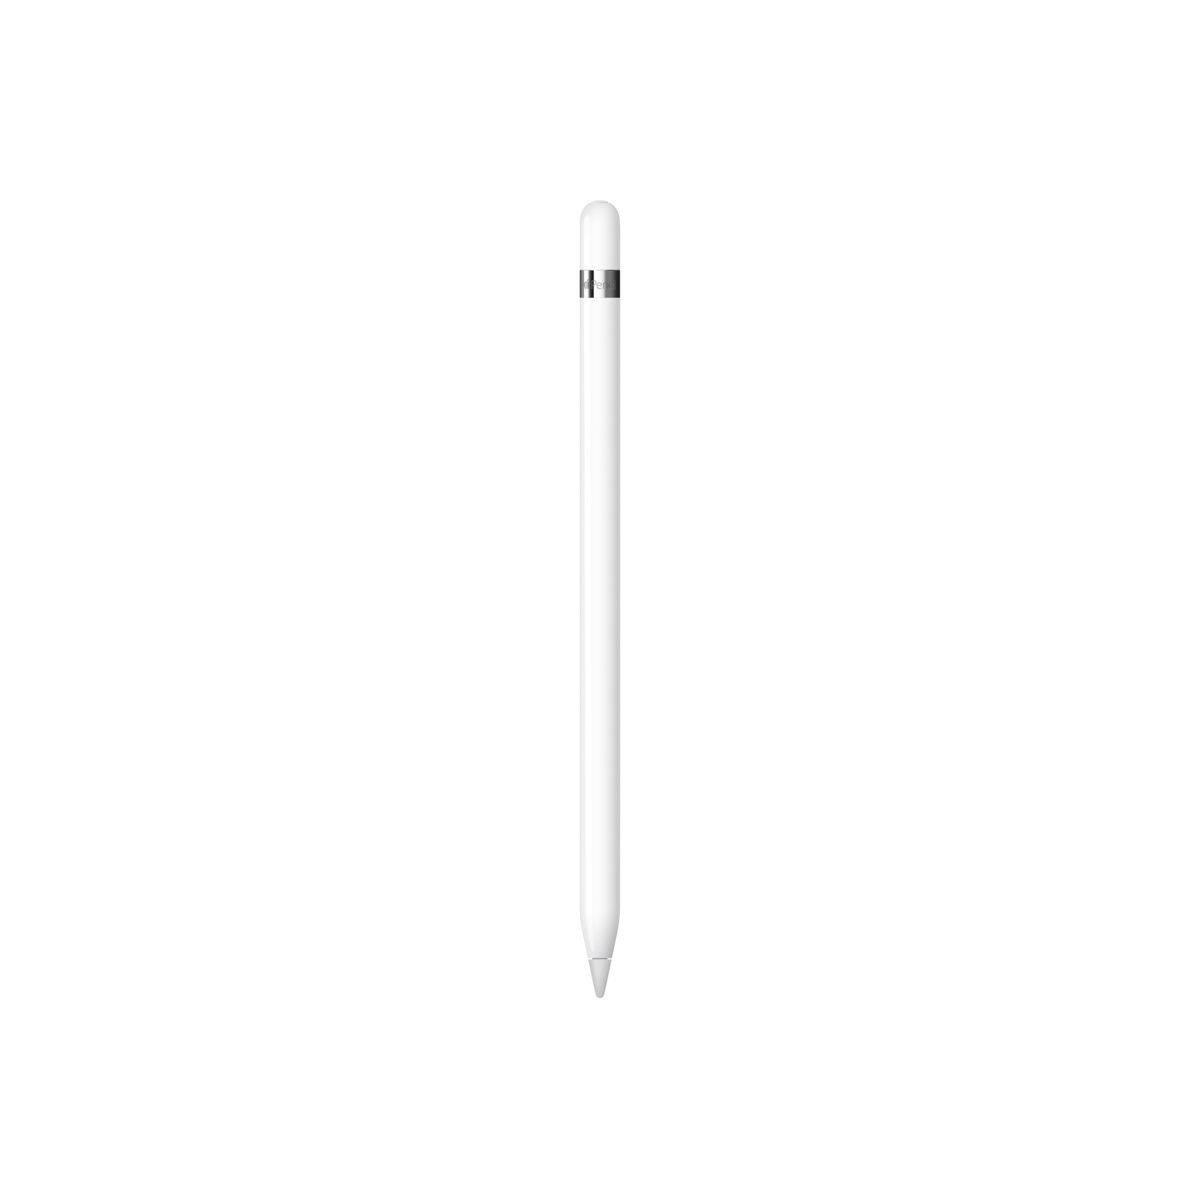 Apple Apple Pencil primera generación